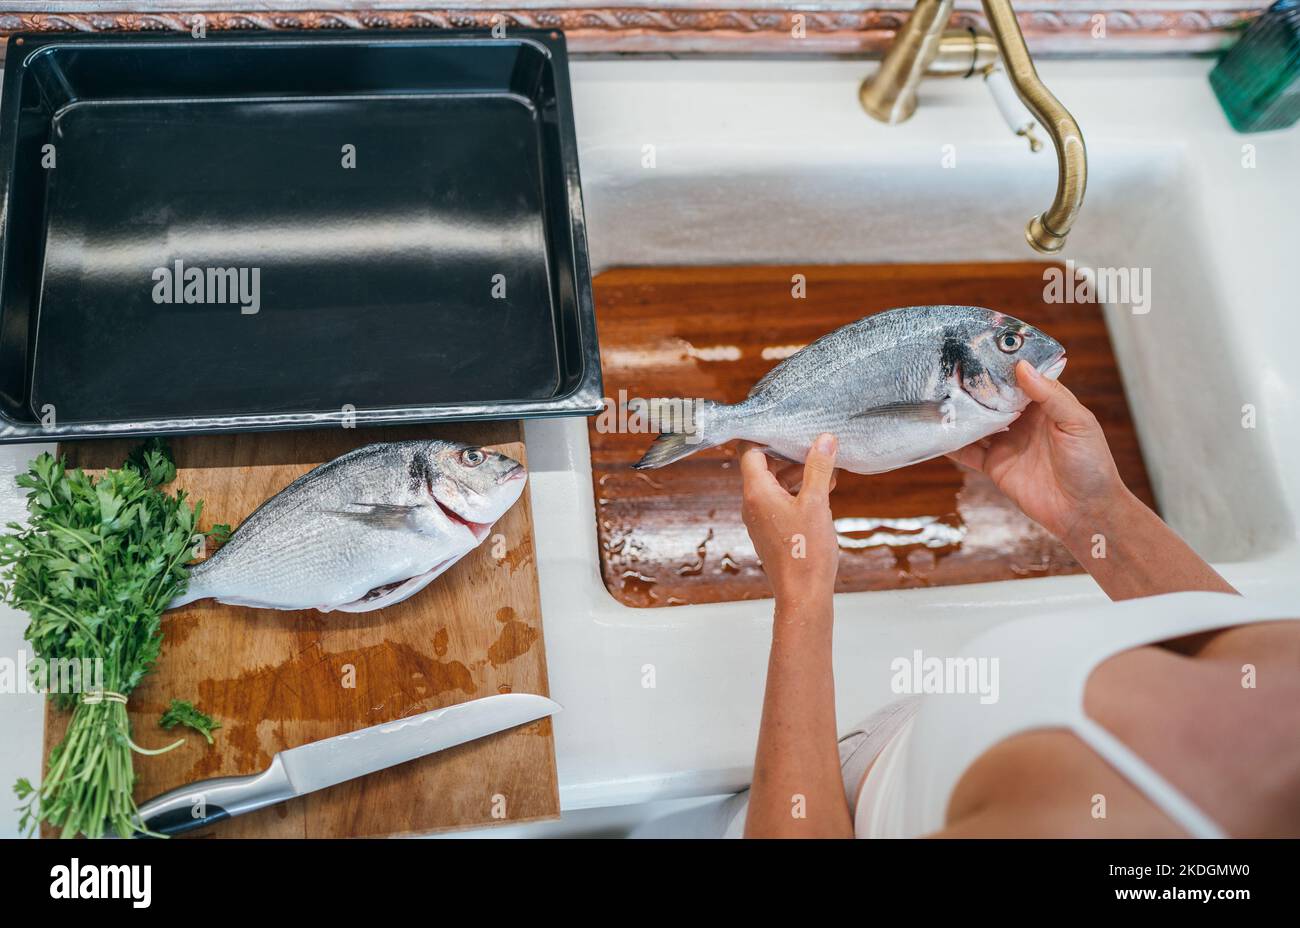 Frische orata oder dorada Fisch Reinigung nach dem Ausschneiden unter dem Spülbecken Wasserhahn. Backblech zum Kochen vorbereitet. Gesunde, frische Meeresfrüchte bereiten vor Stockfoto